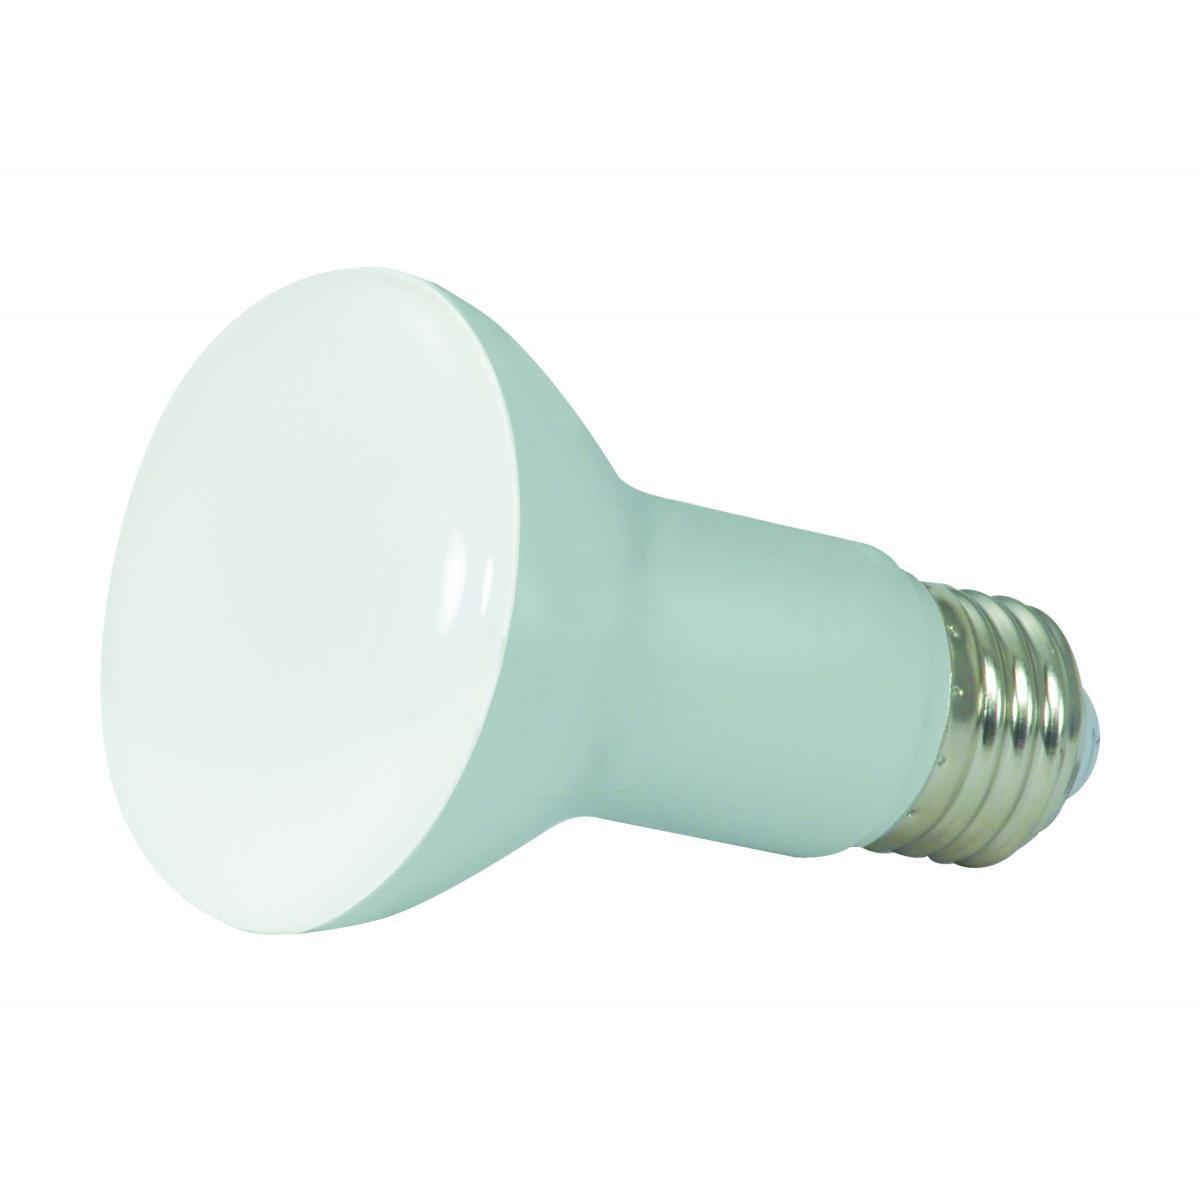 LED R20/BR20 Reflector bulb, 7 watt, 525 Lumens, 4000K, E26 Medium Base, 107 Deg. Flood, Dimmable - Bees Lighting